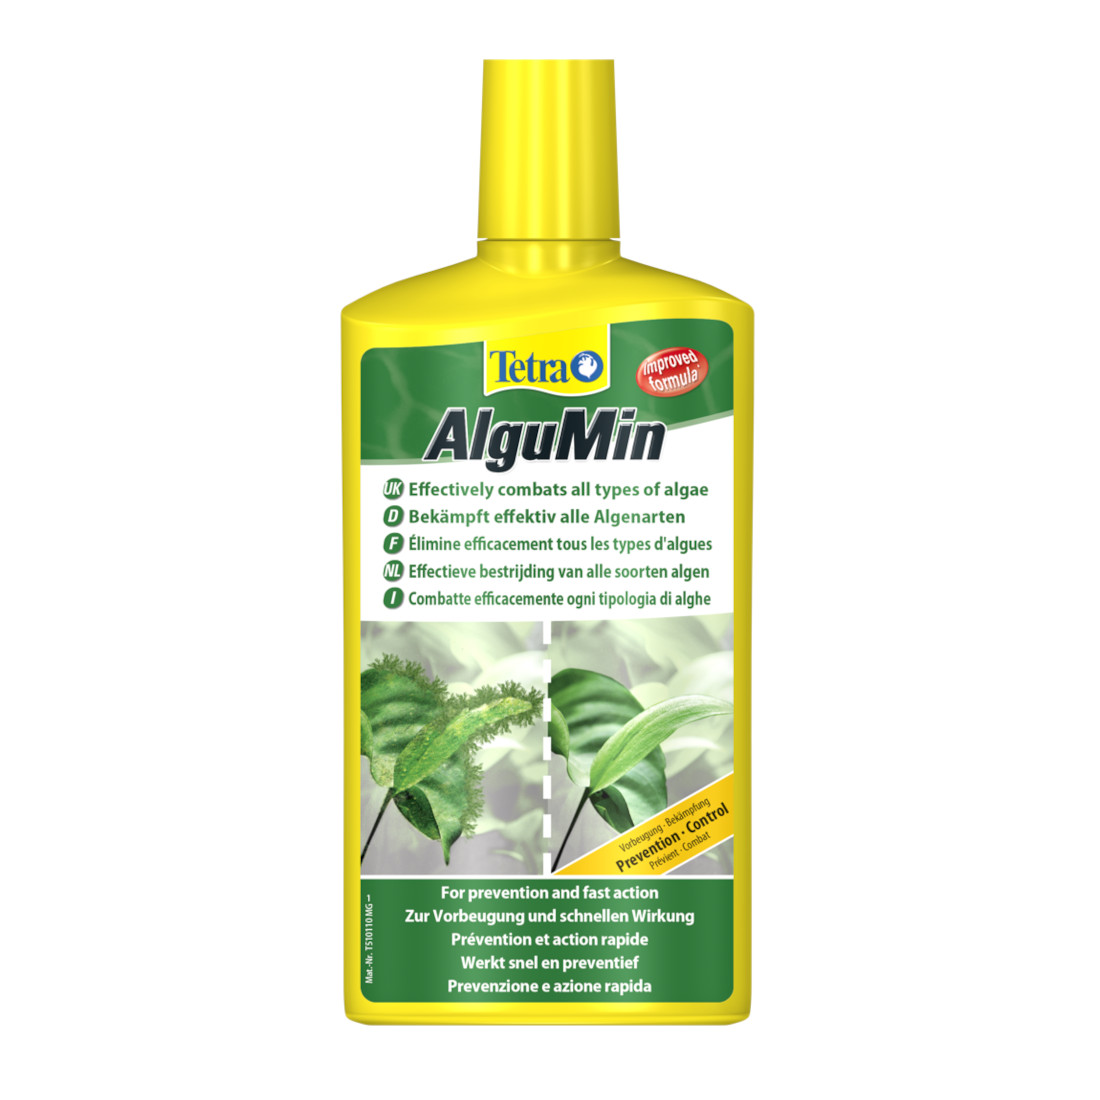 Tetra AlguMin 0,5 Liter (Algenmittel gegen alle Algenarten)